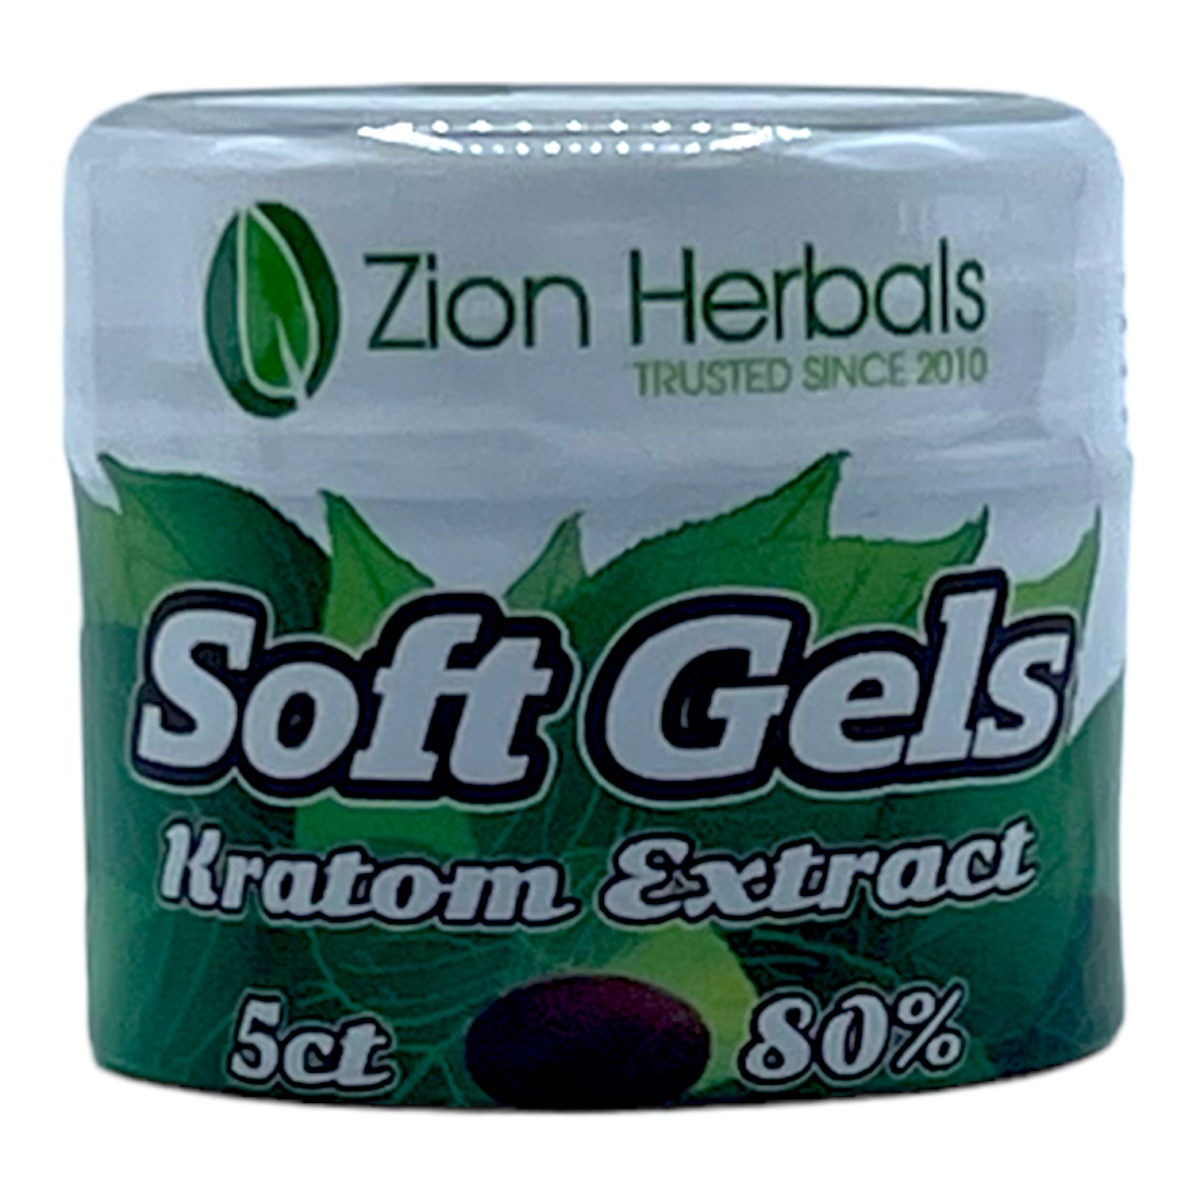 Zion Herbals Soft Gels Kratom Extract 80% – 5 count